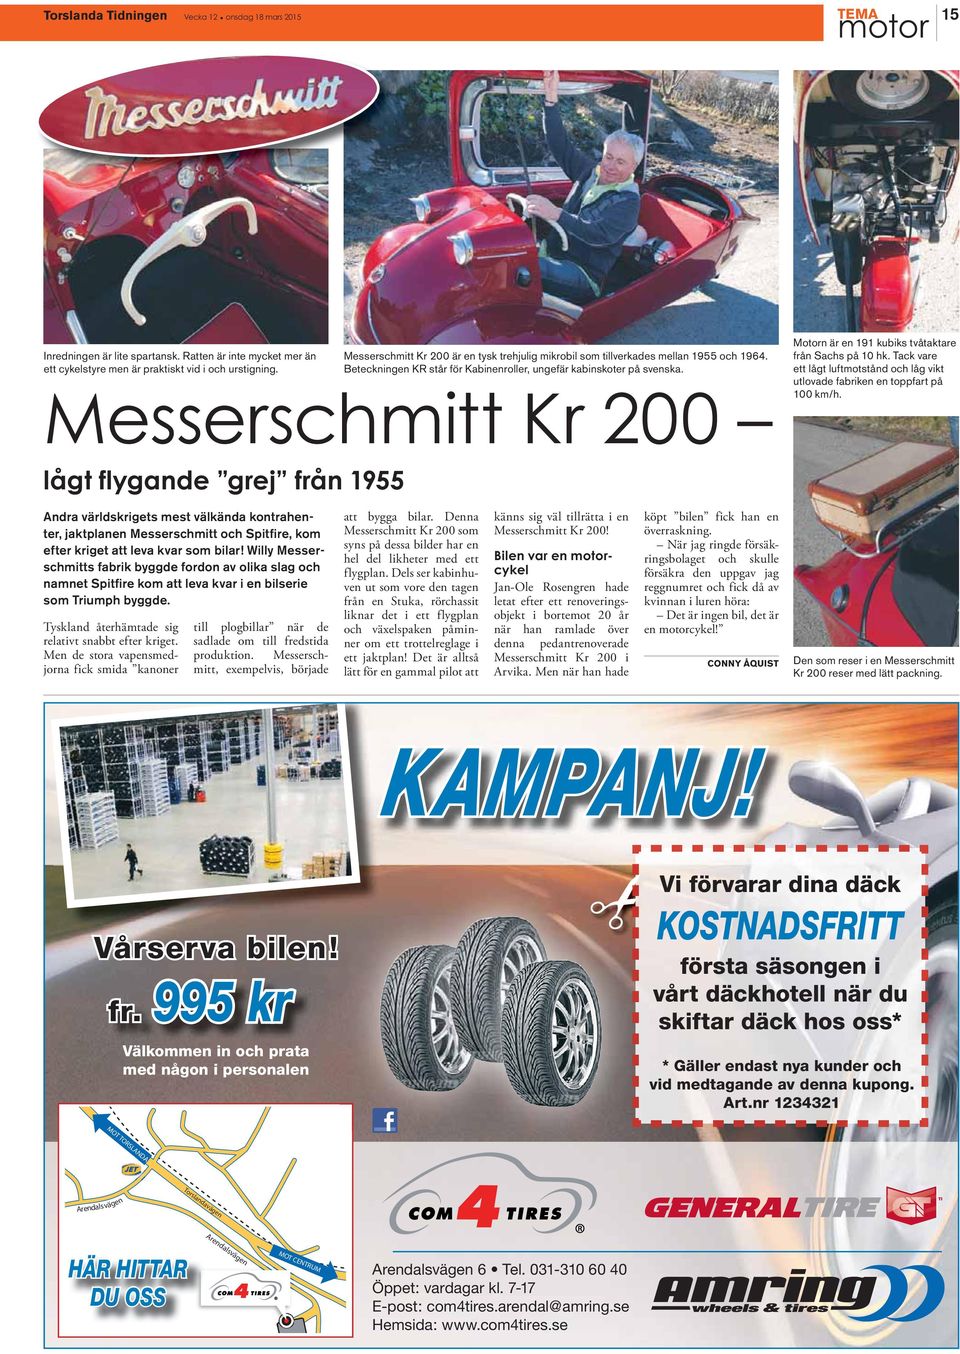 Messerschmitt Kr 200 Motorn är en 191 kubiks tvåtaktare från Sachs på 10 hk. Tack vare ett lågt luftmotstånd och låg vikt utlovade fabriken en toppfart på 100 km/h.